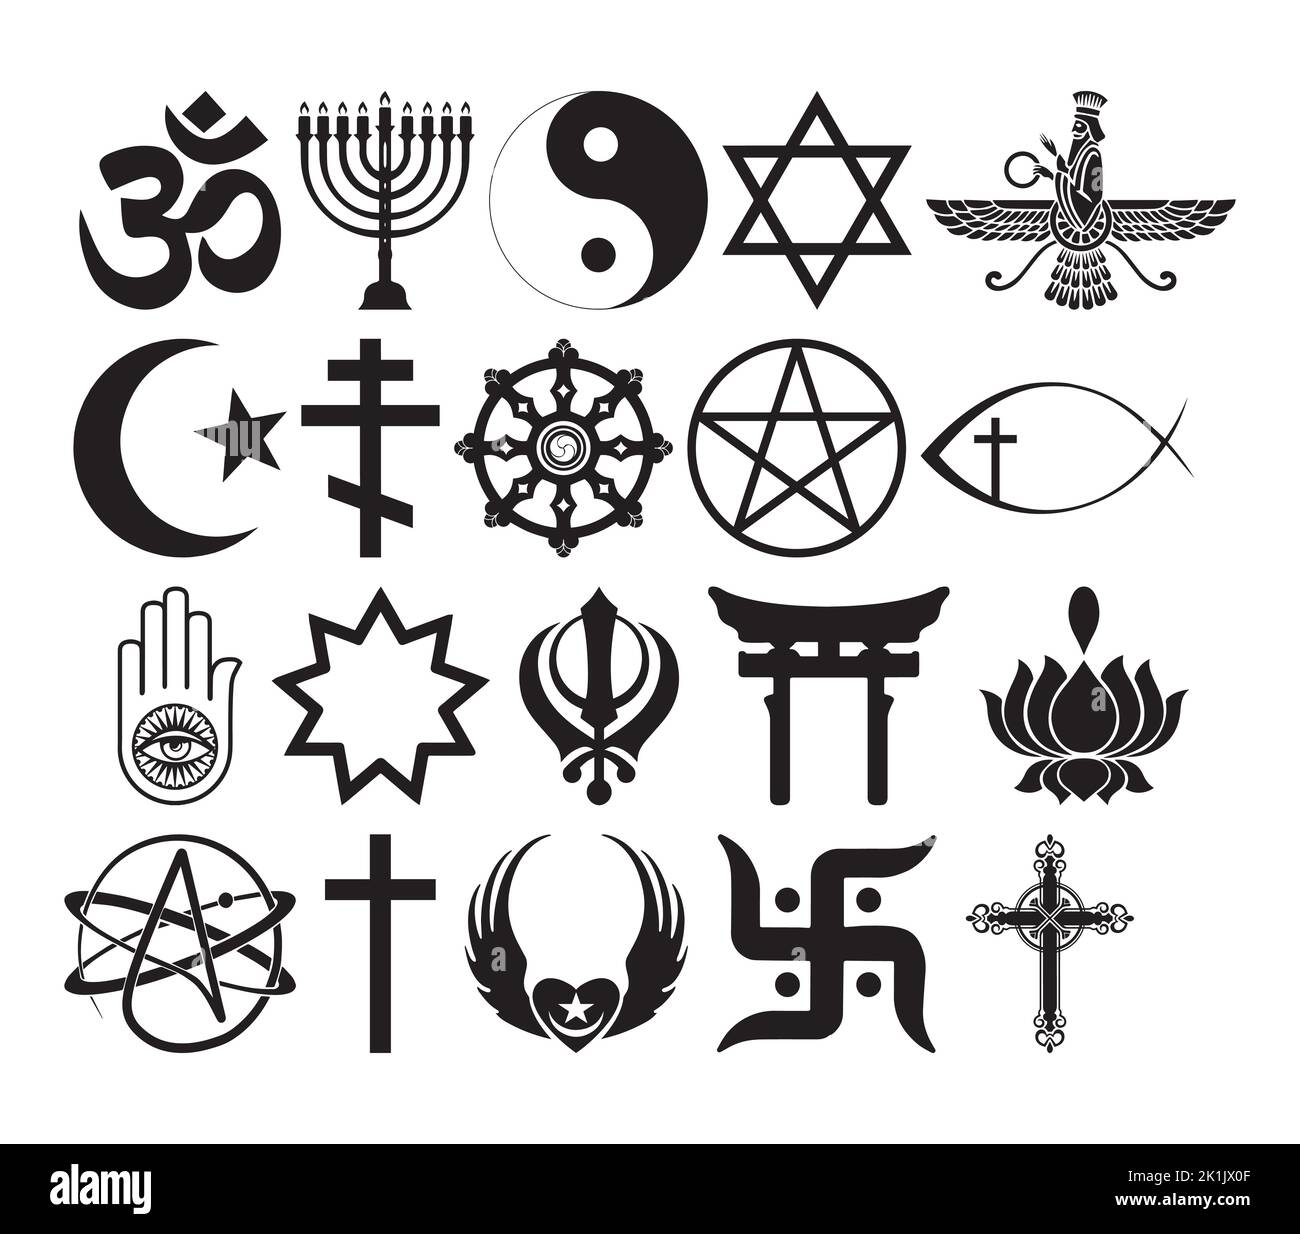 Vektor-Illustration der Welt religiösen und Glauben Symbole Clipart. Silhouette Zeichen Satz des Glaubens. Vektorgrafik Stock Vektor